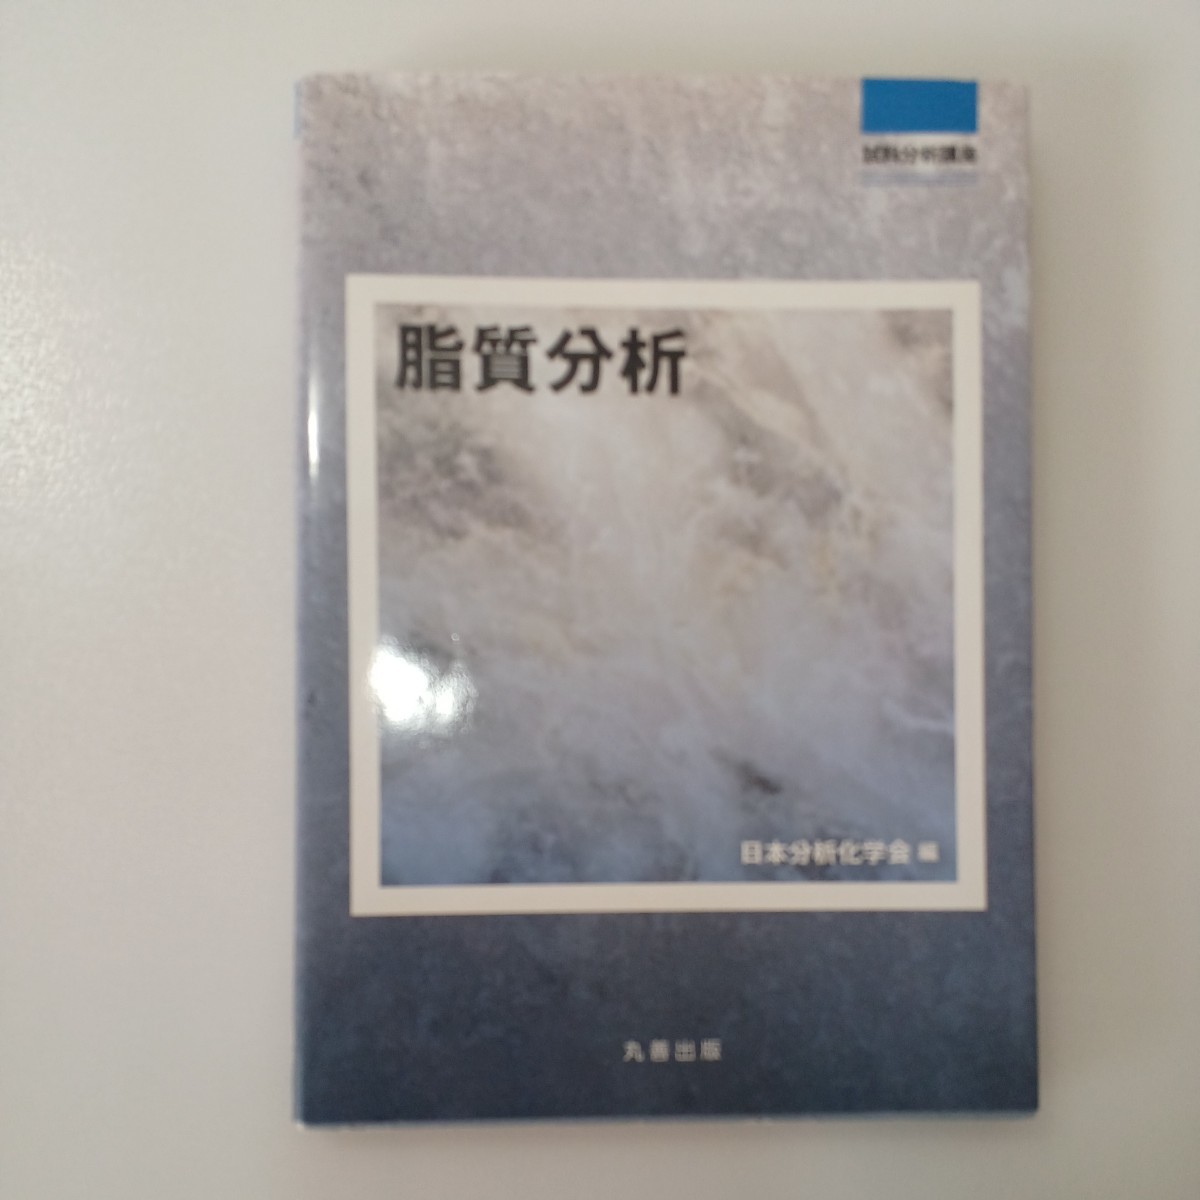 zaa-535♪脂質分析 (試料分析講座) 単行本 日本分析化学会 (編集) 丸善出版 (2011/12/30)